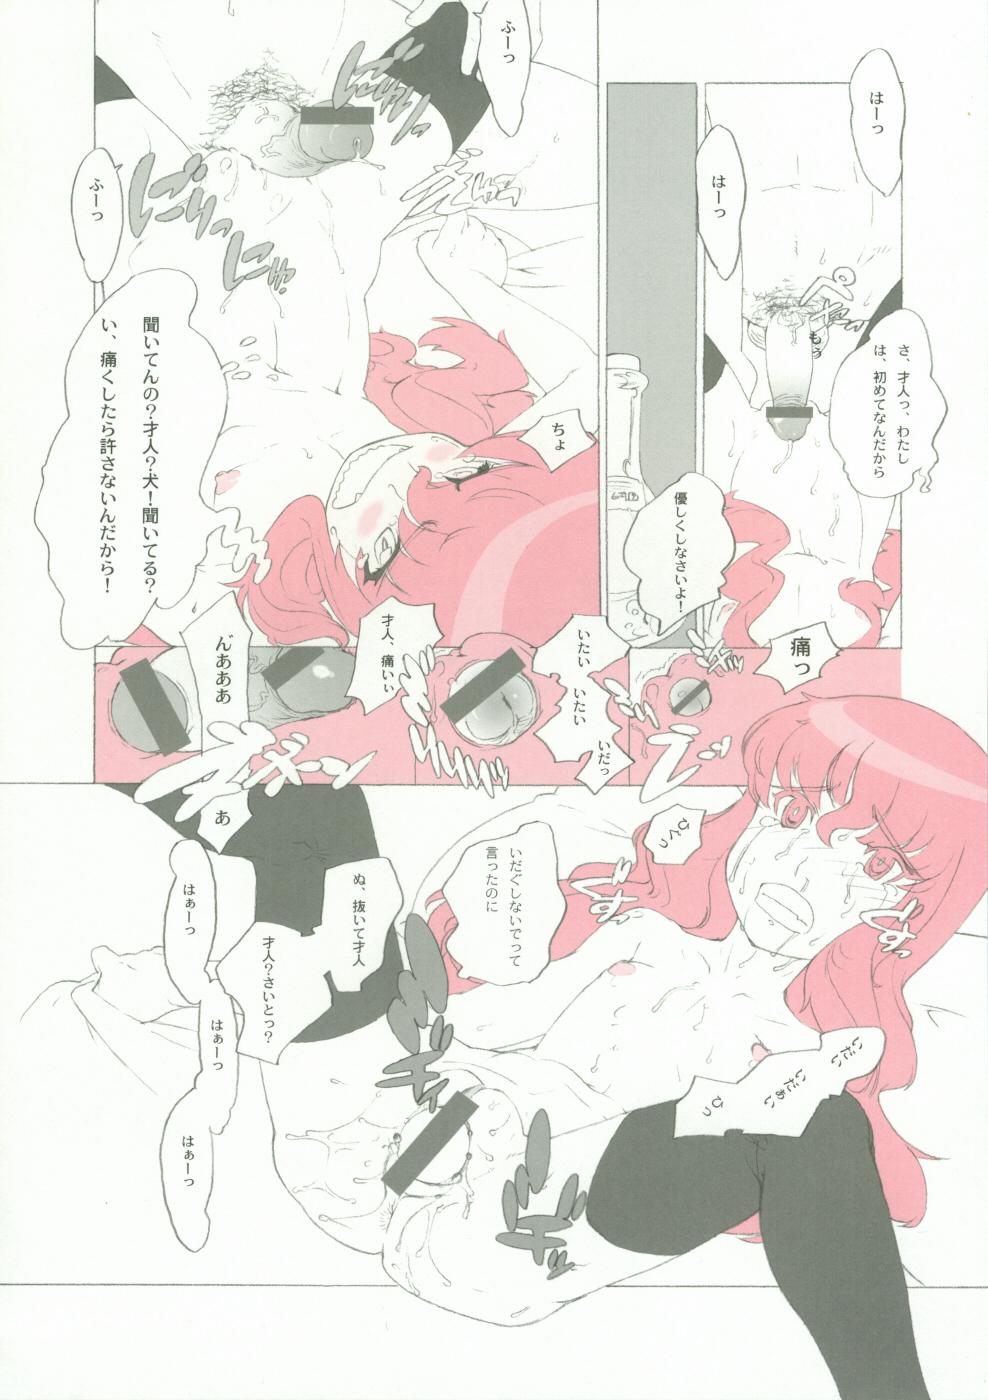 Putaria Momo Kami Shikiso - Zero no tsukaima Pierced - Page 13